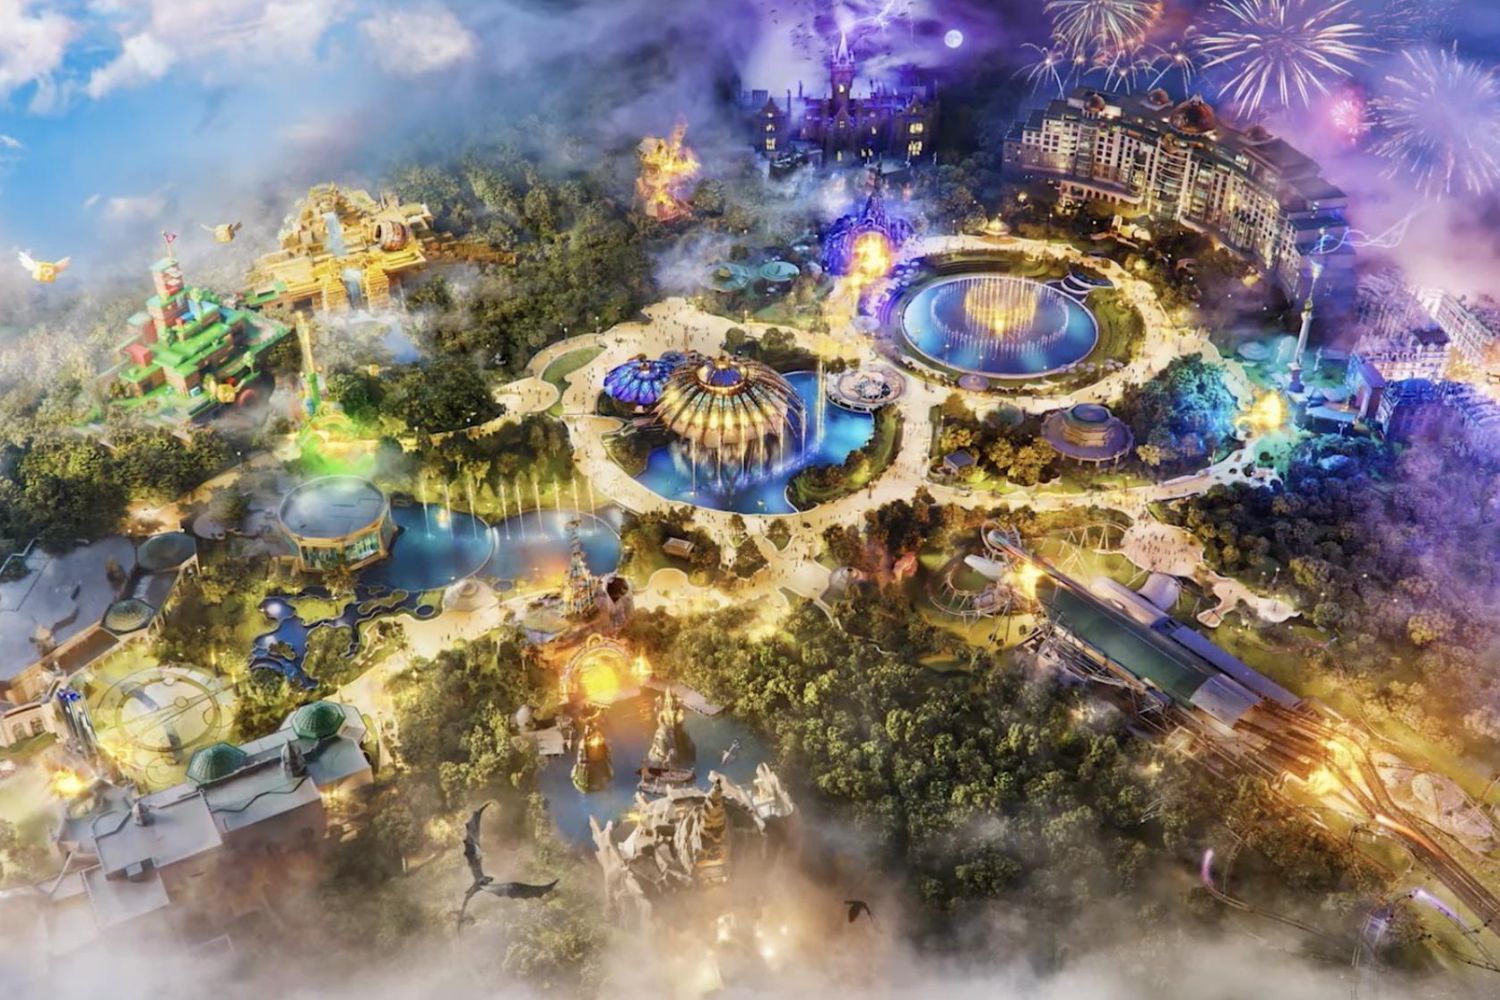 Universal Epic Universe : ce nouveau parc réunit Harry Potter, Mario, Dragons et plus encore